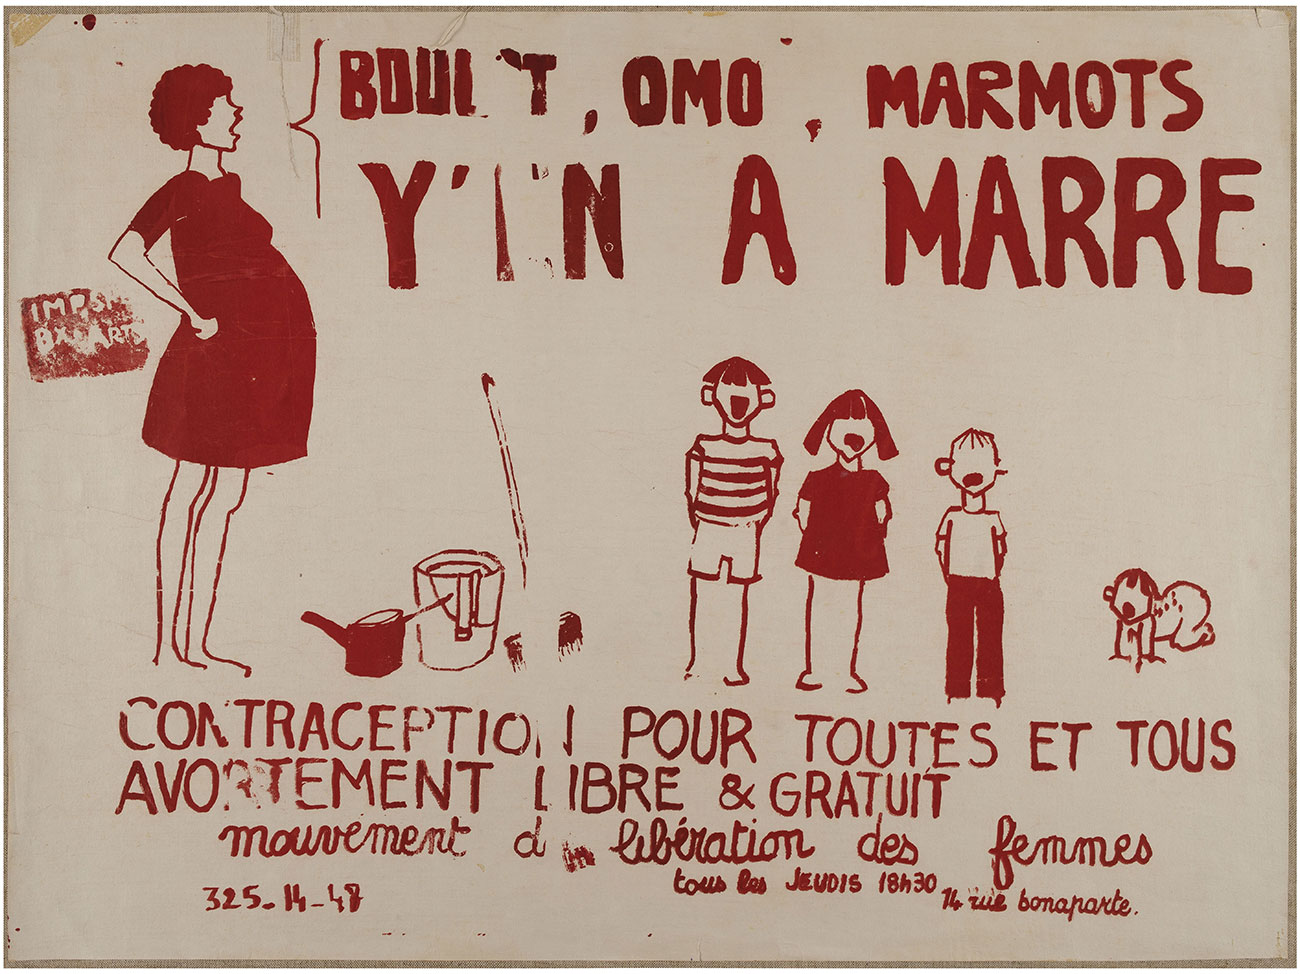 Affiche. Boulot, Omo, marmots, y'en a marre, contraception pour toutes et tous, MLF, 1971. Paris, Bibliothèque Marguerite Durand